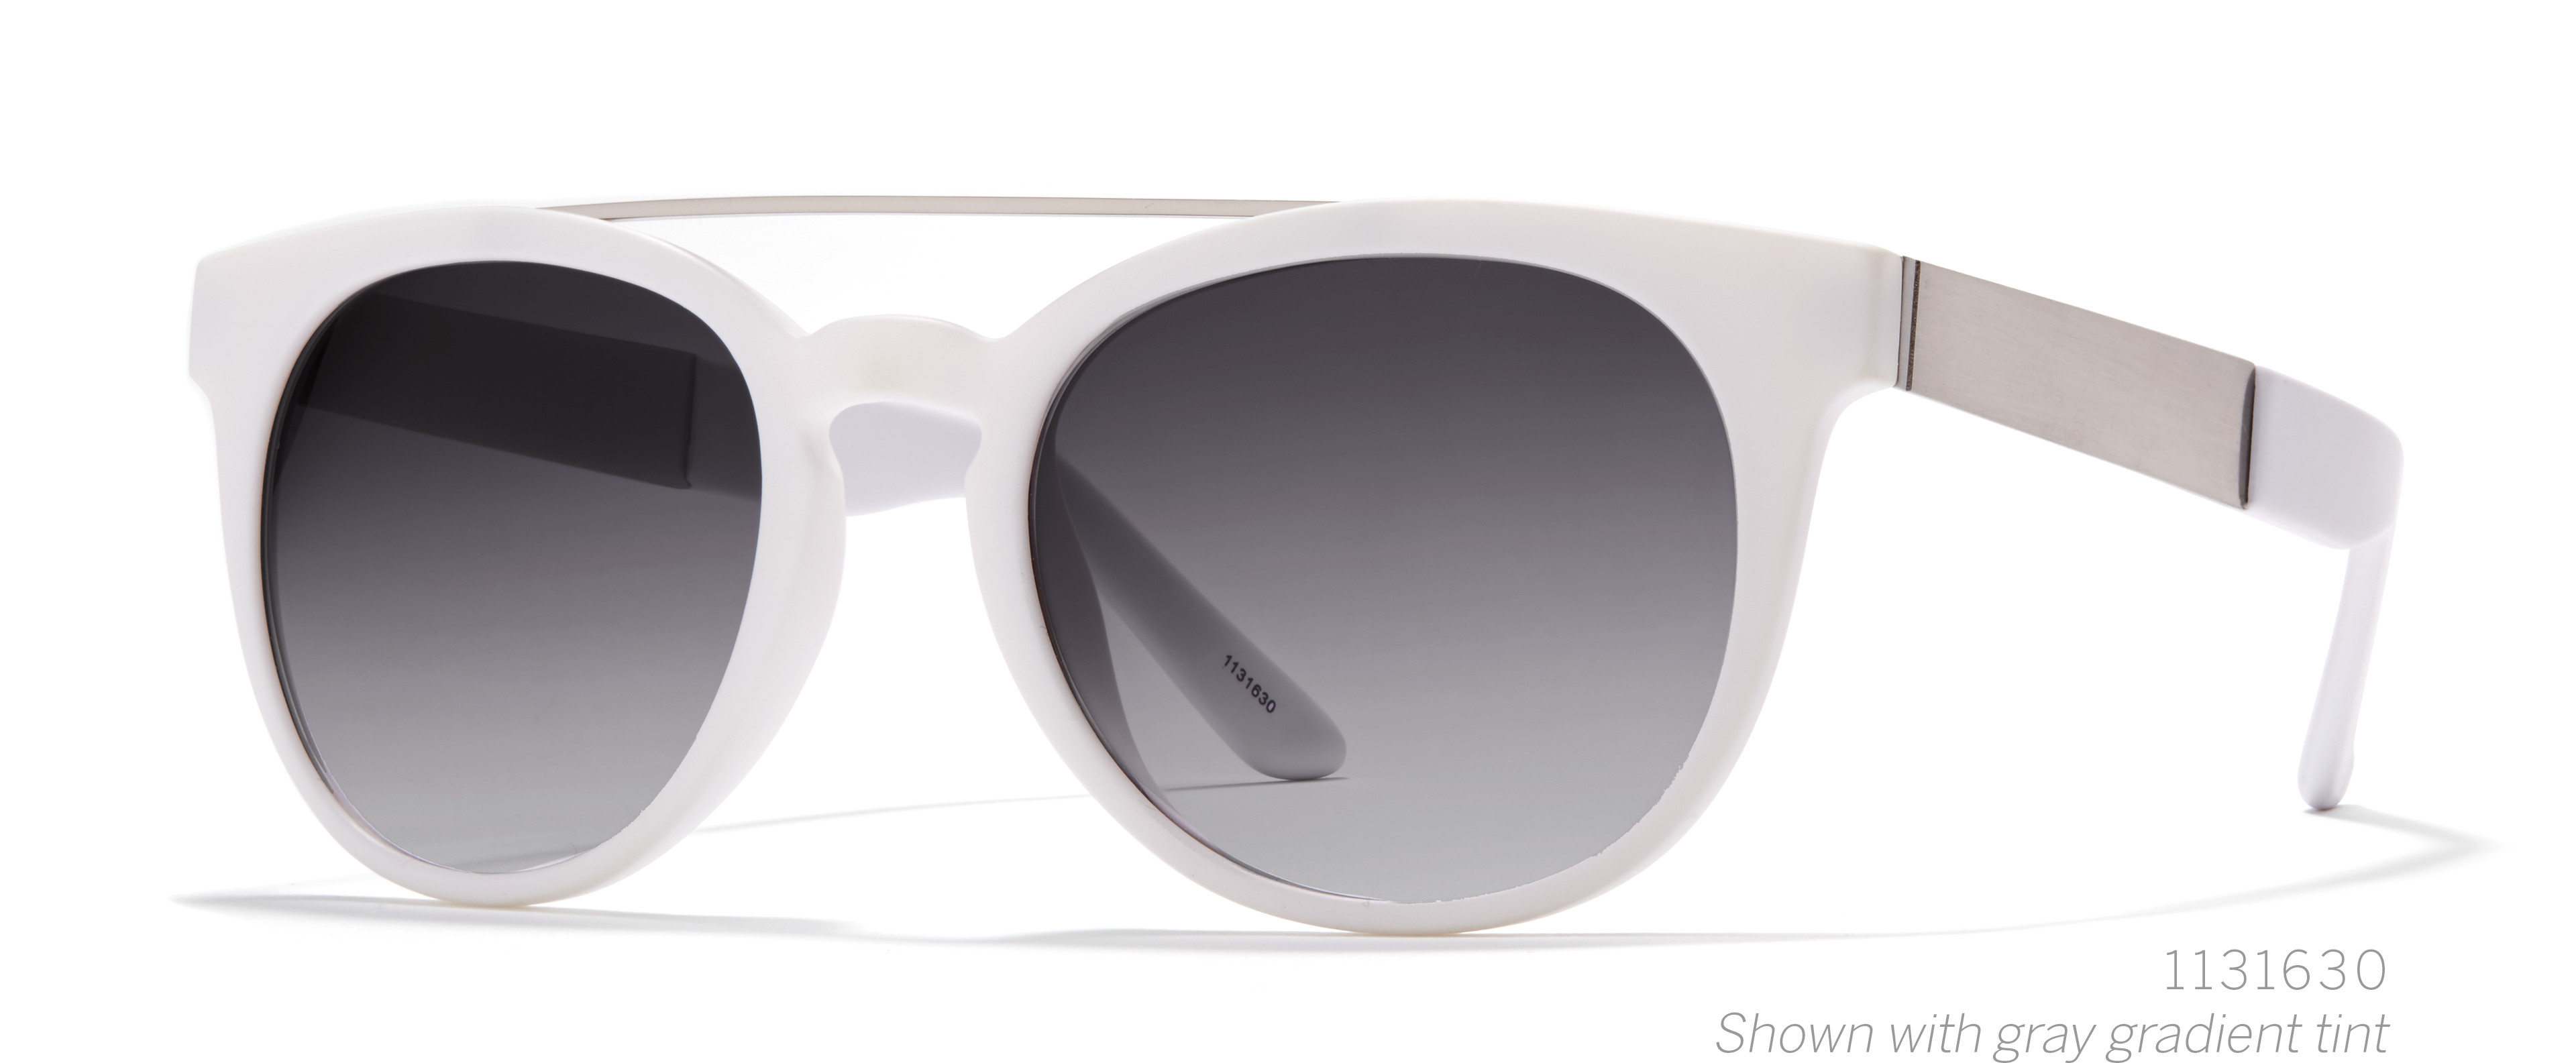 round aviator sunglasses 